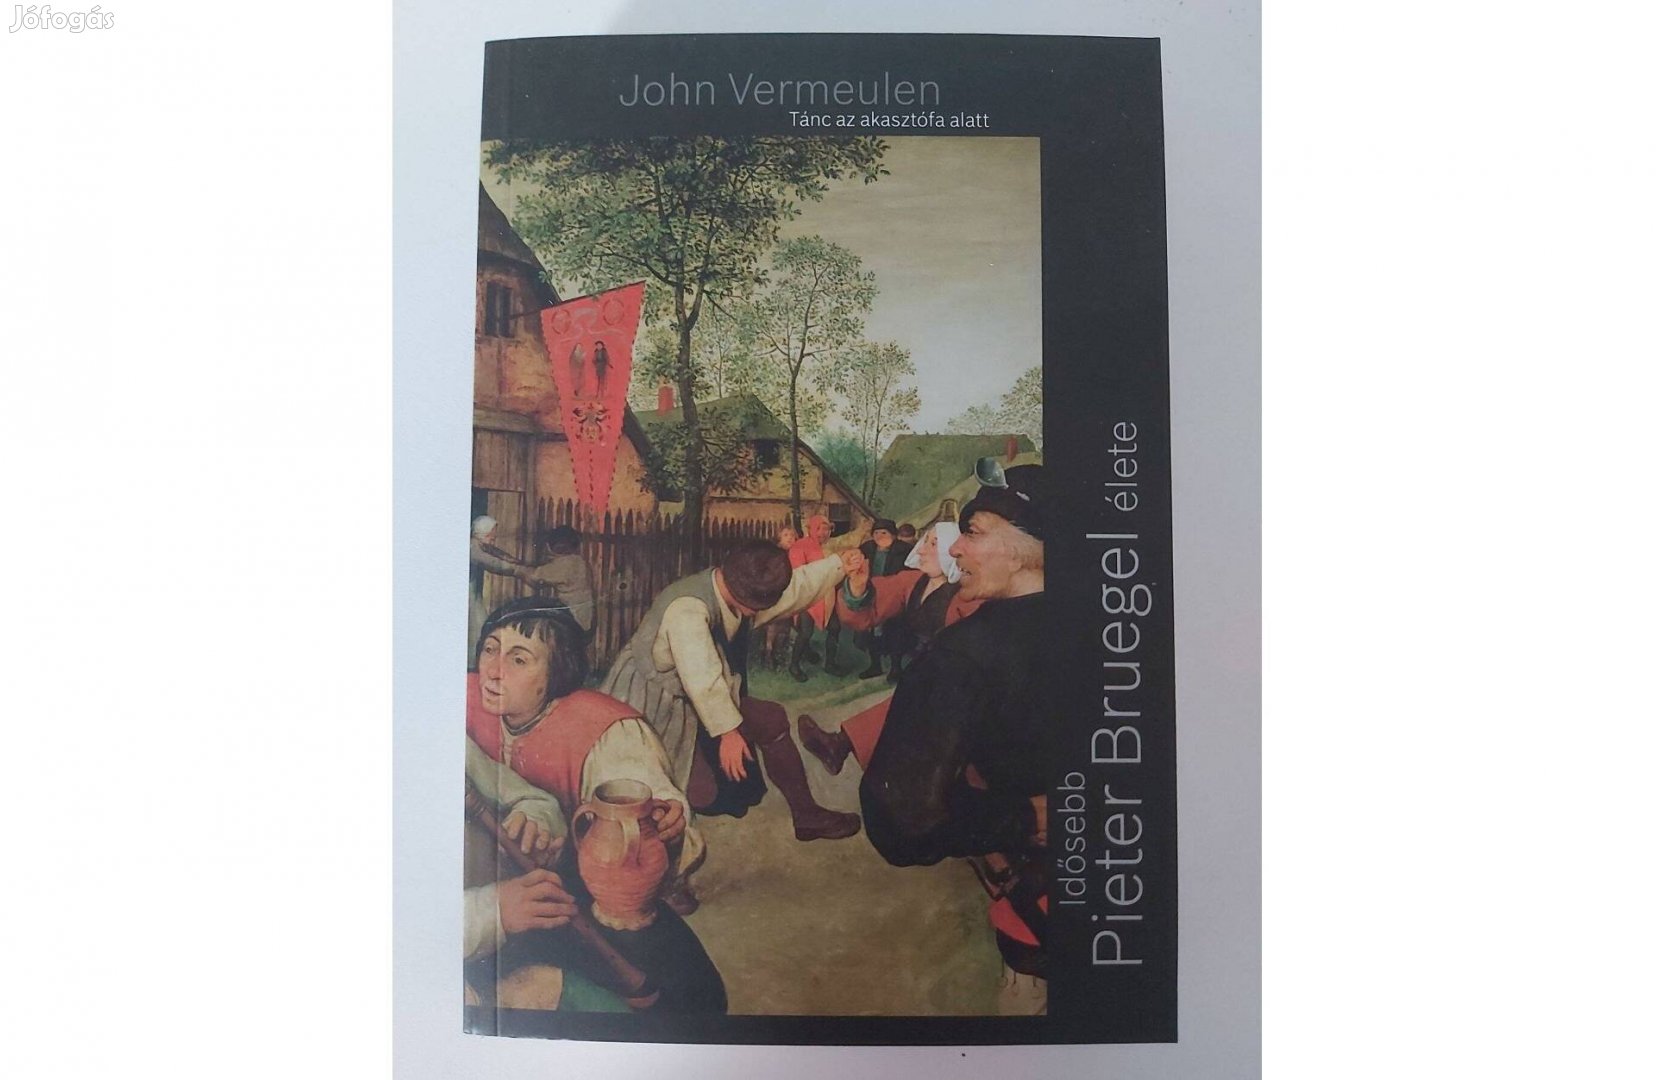 John Vermeulen: Tánc az akasztófa alatt